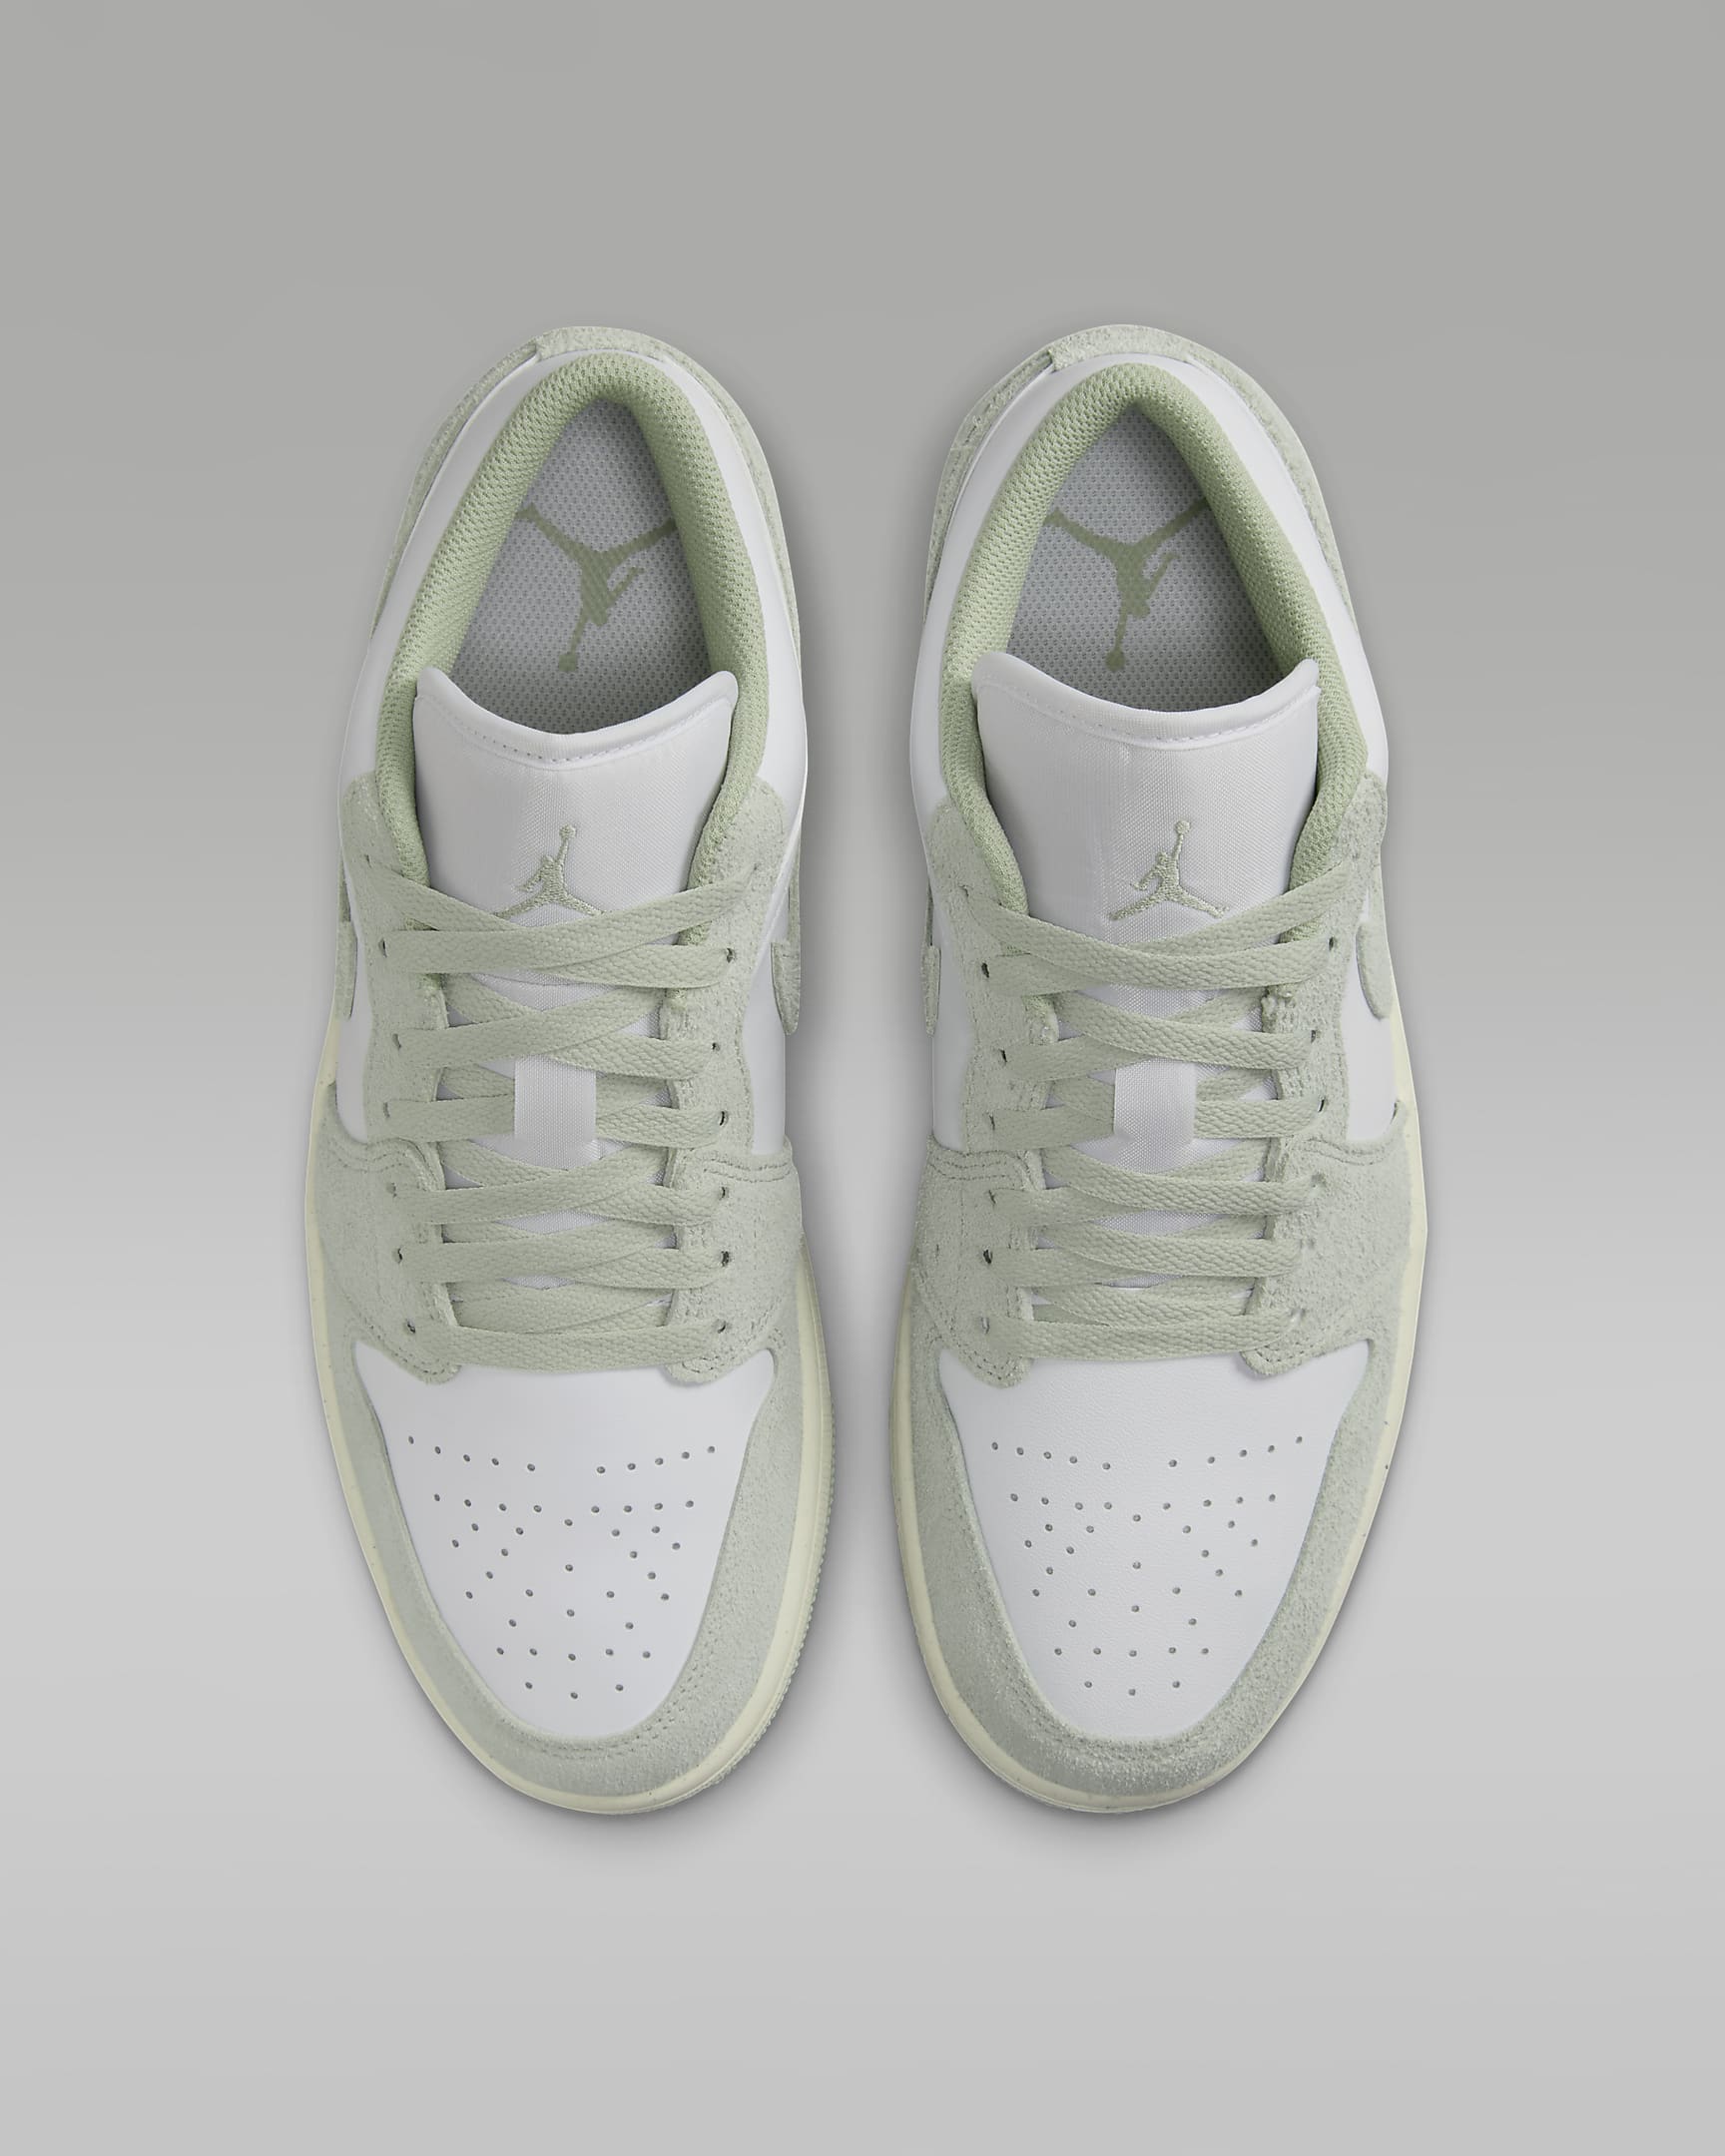 Air Jordan 1 Low SE Men's Shoes - White/Sail/Seafoam